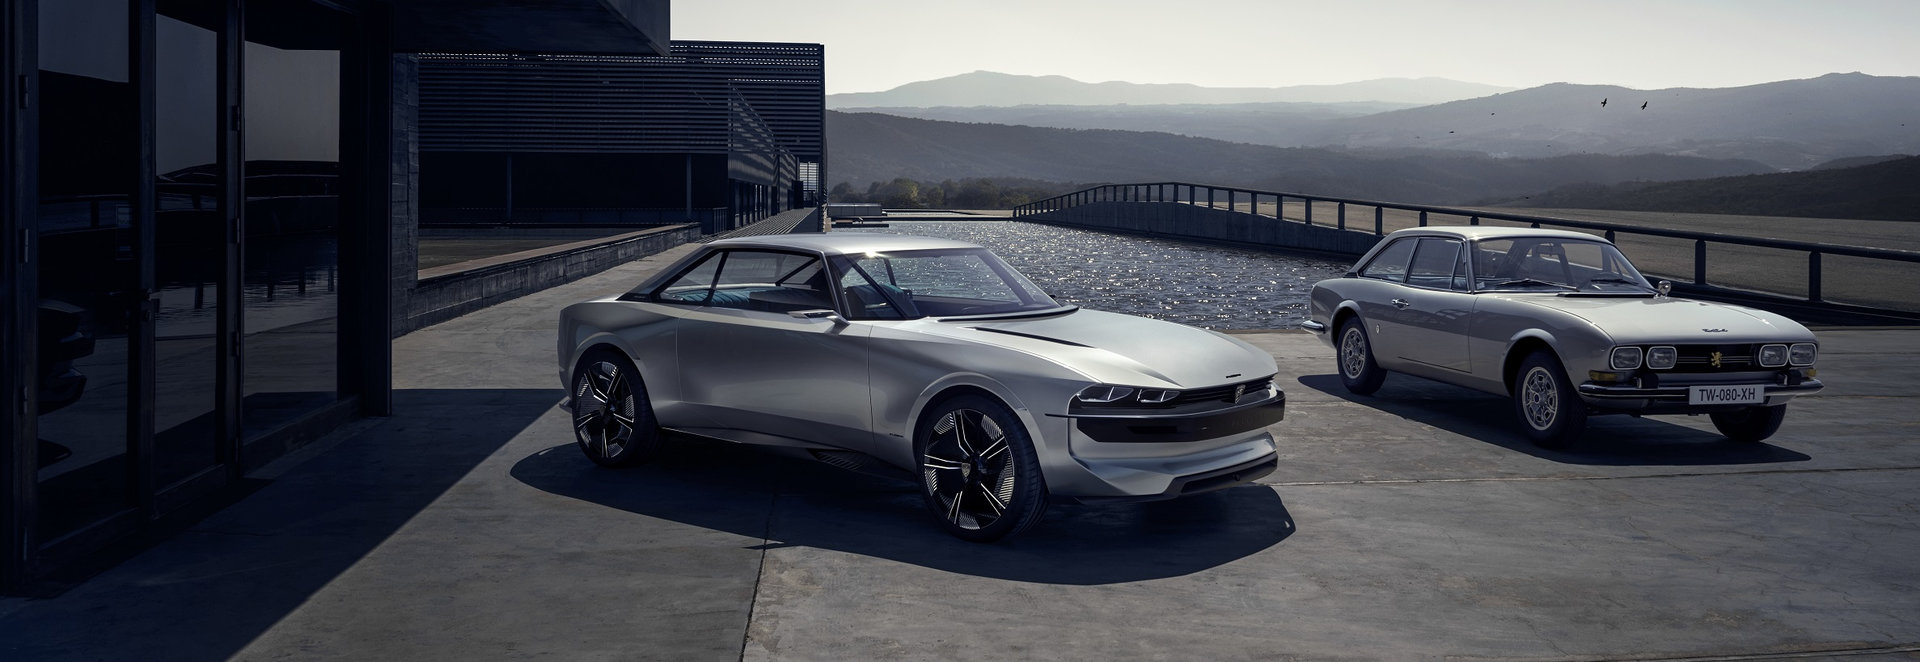 Peugeot e-Legend Concept, del pasado al futuro